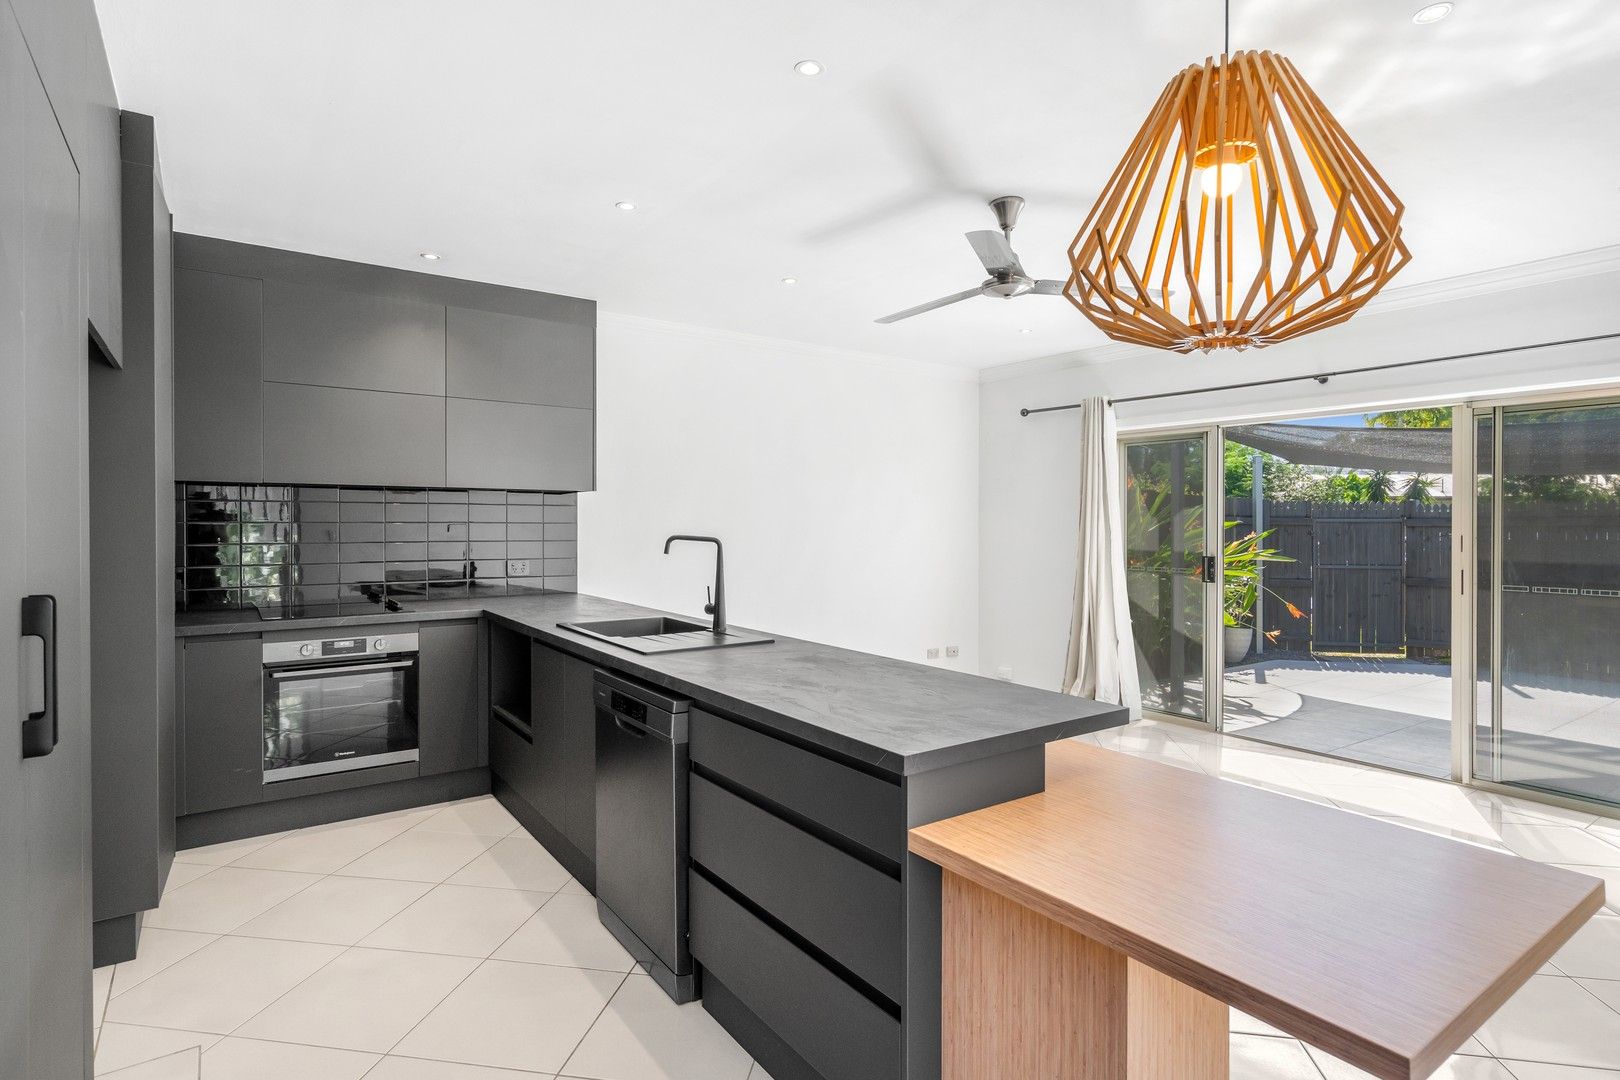 1 bedrooms Apartment / Unit / Flat in  MANUNDA QLD, 4870